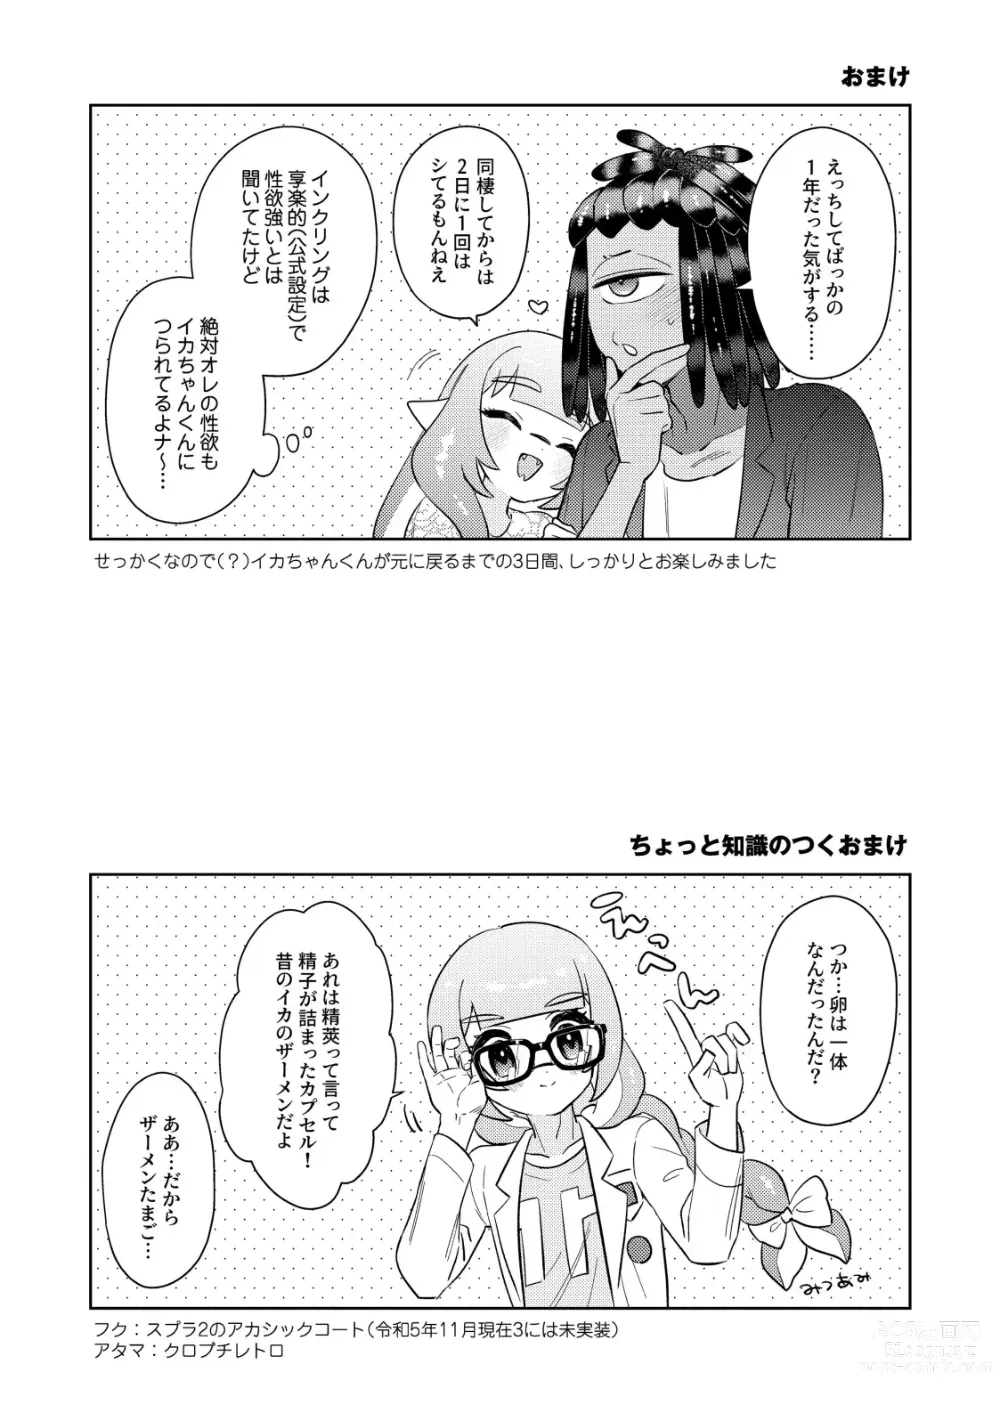 Page 36 of doujinshi Kawaihito